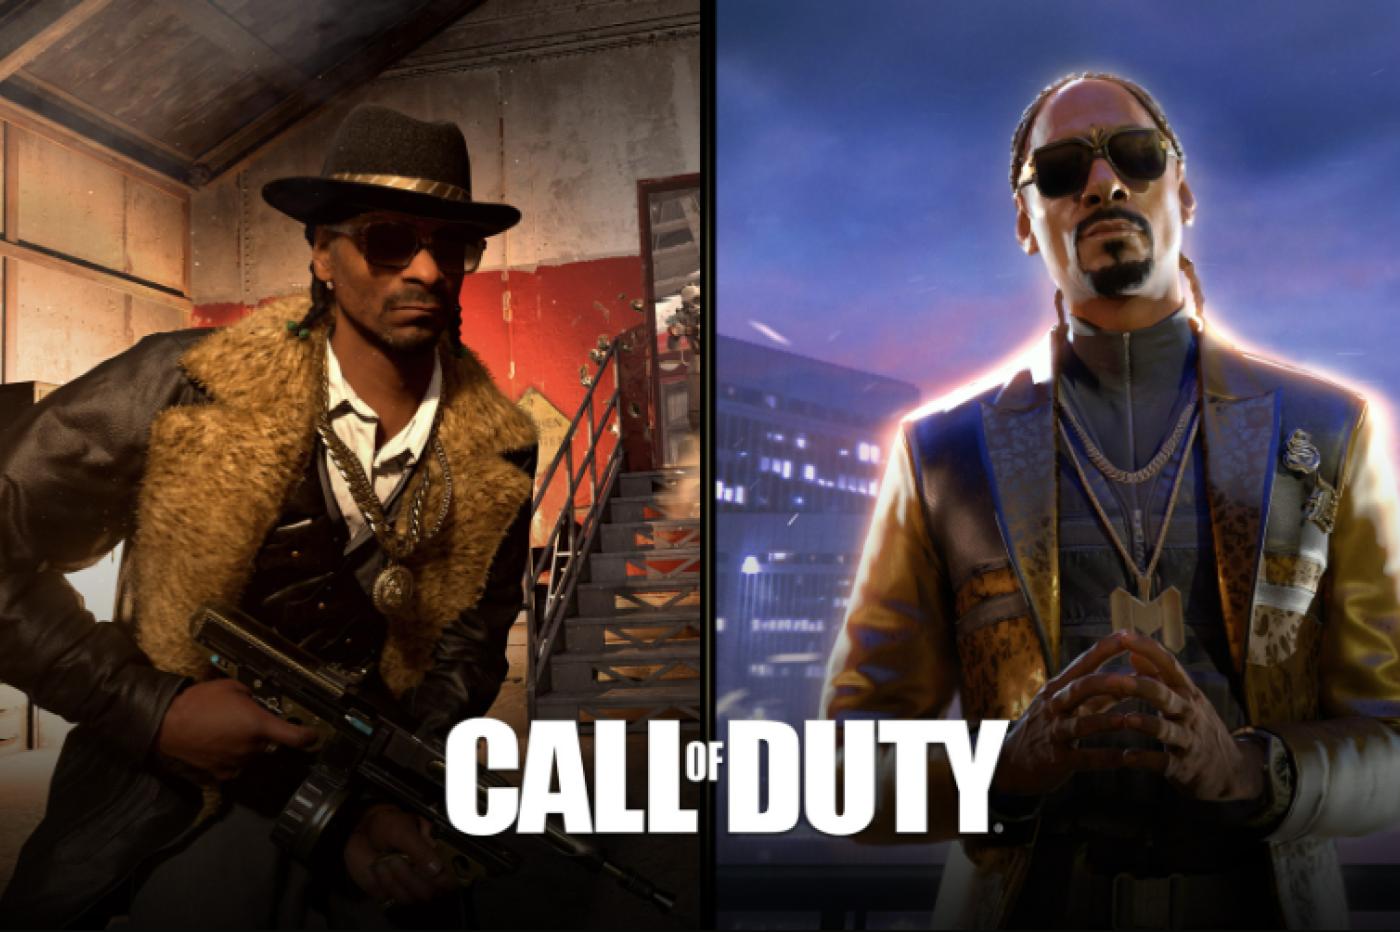 Image promotionnelle de l'addition de Snoop Dogg dans Call of Duty. L'image présente deux de ses tenues, une avec le la fourure et l'autre étant un costume cravate